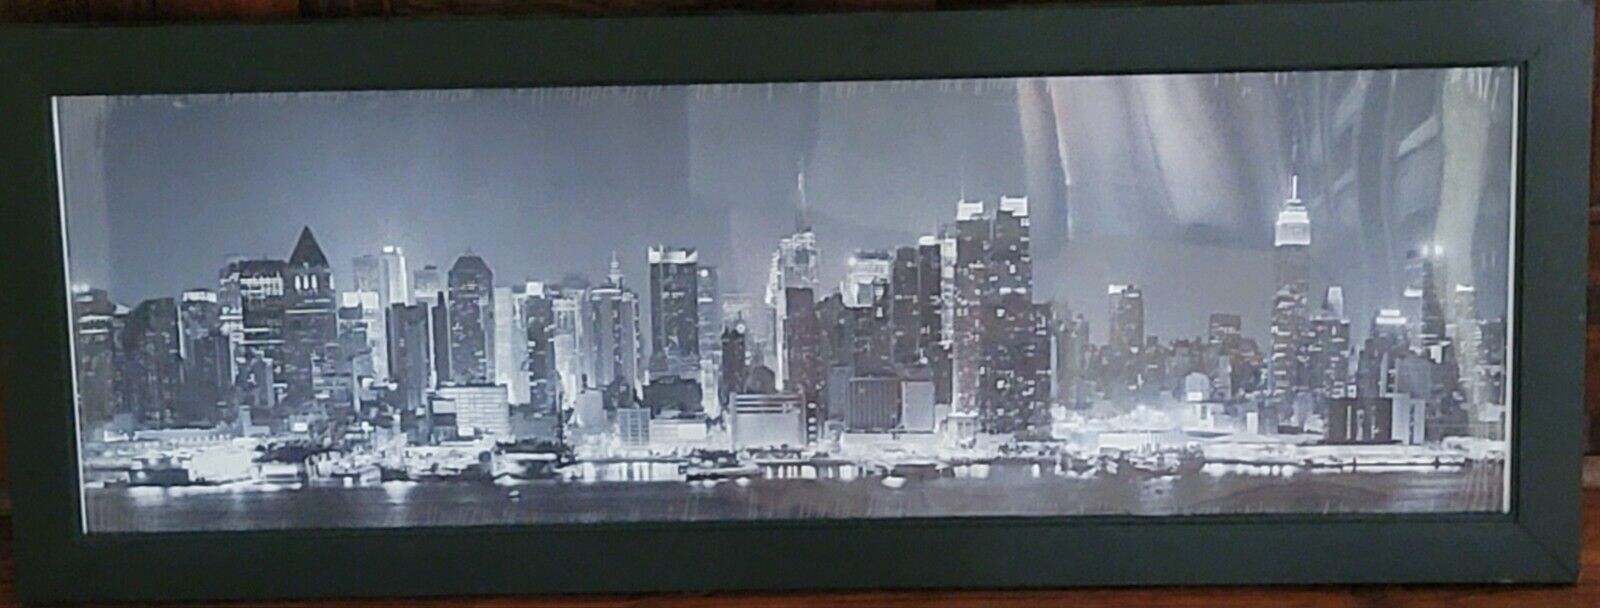 Framed Photo Of New York